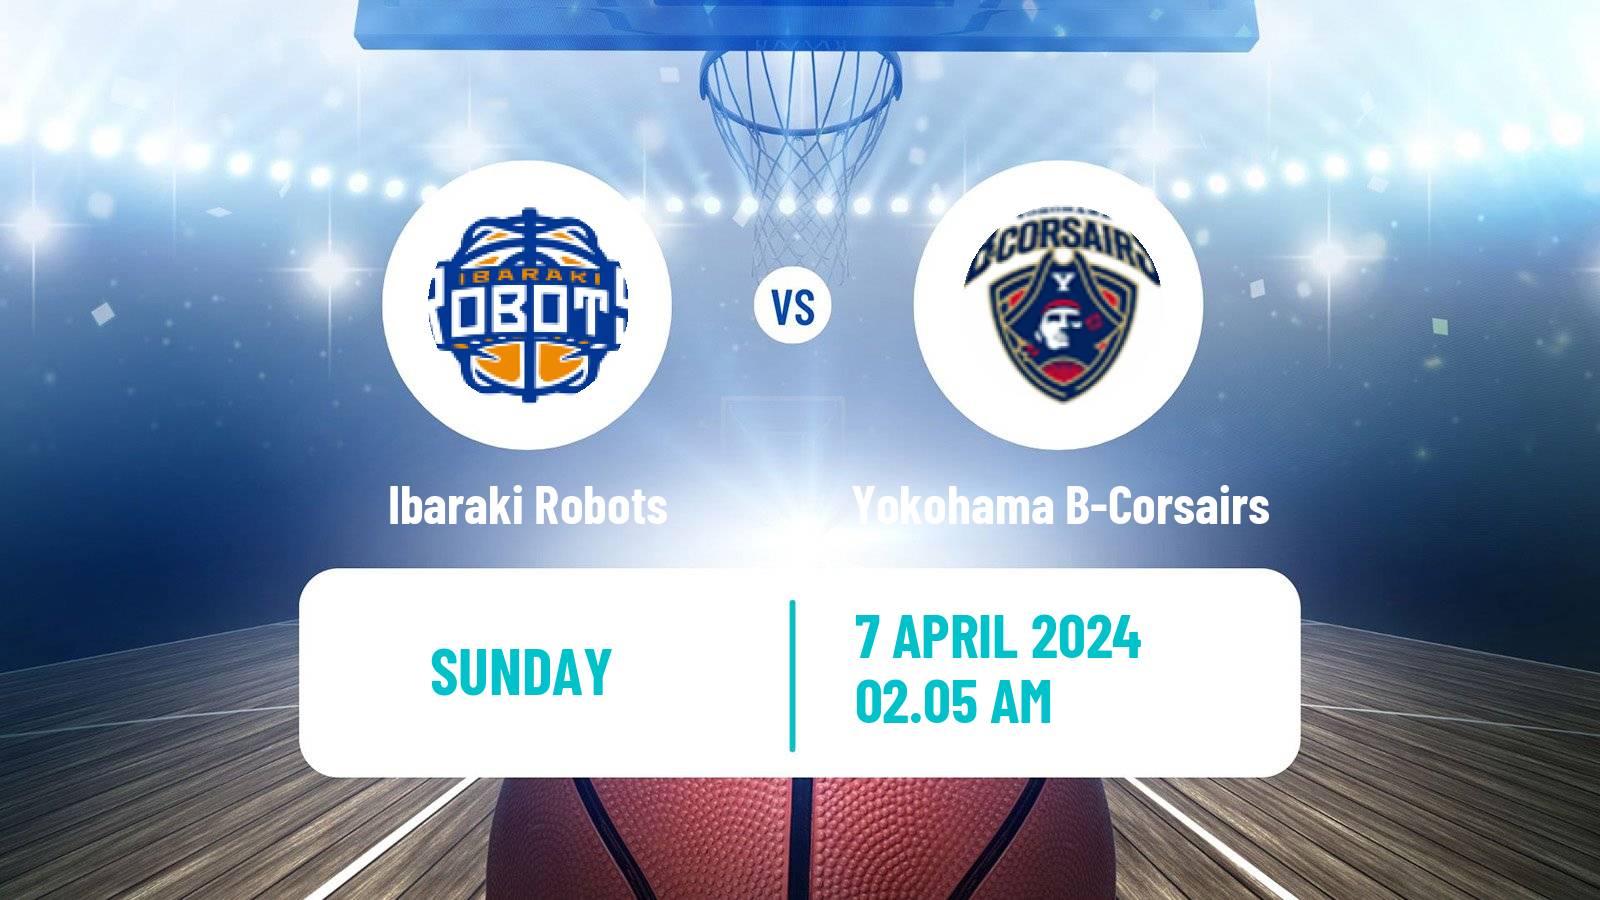 Basketball BJ League Ibaraki Robots - Yokohama B-Corsairs